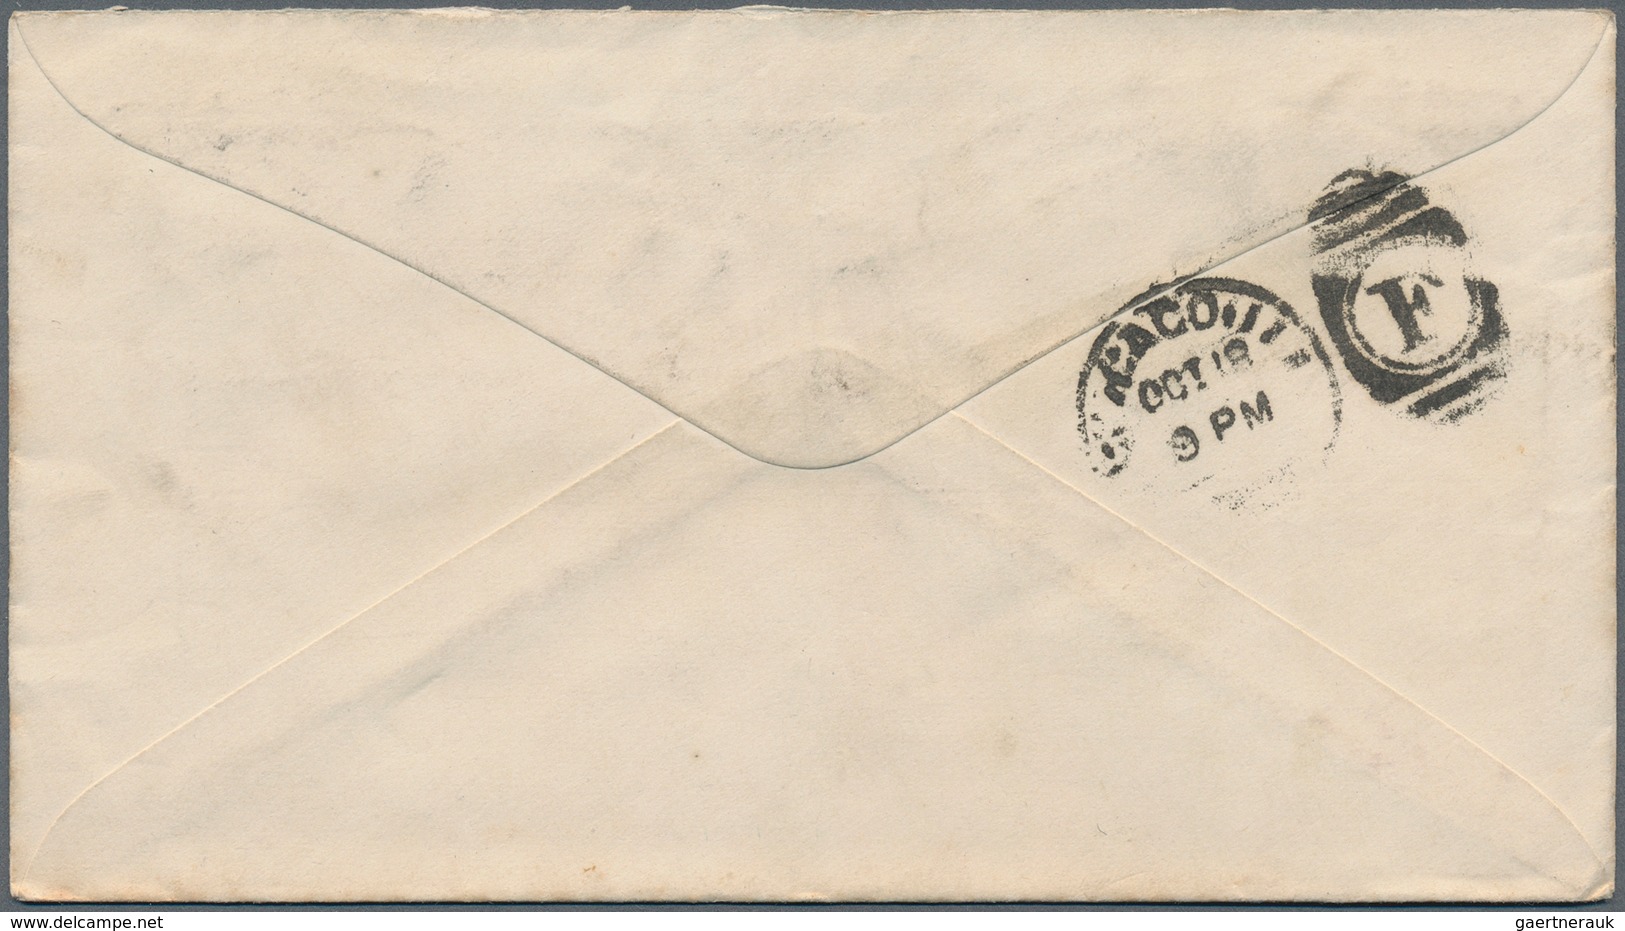 12657 Vereinigte Staaten von Amerika: 1893, Worlds Fair Chicago: Eleven USA/European (stationery) envelope